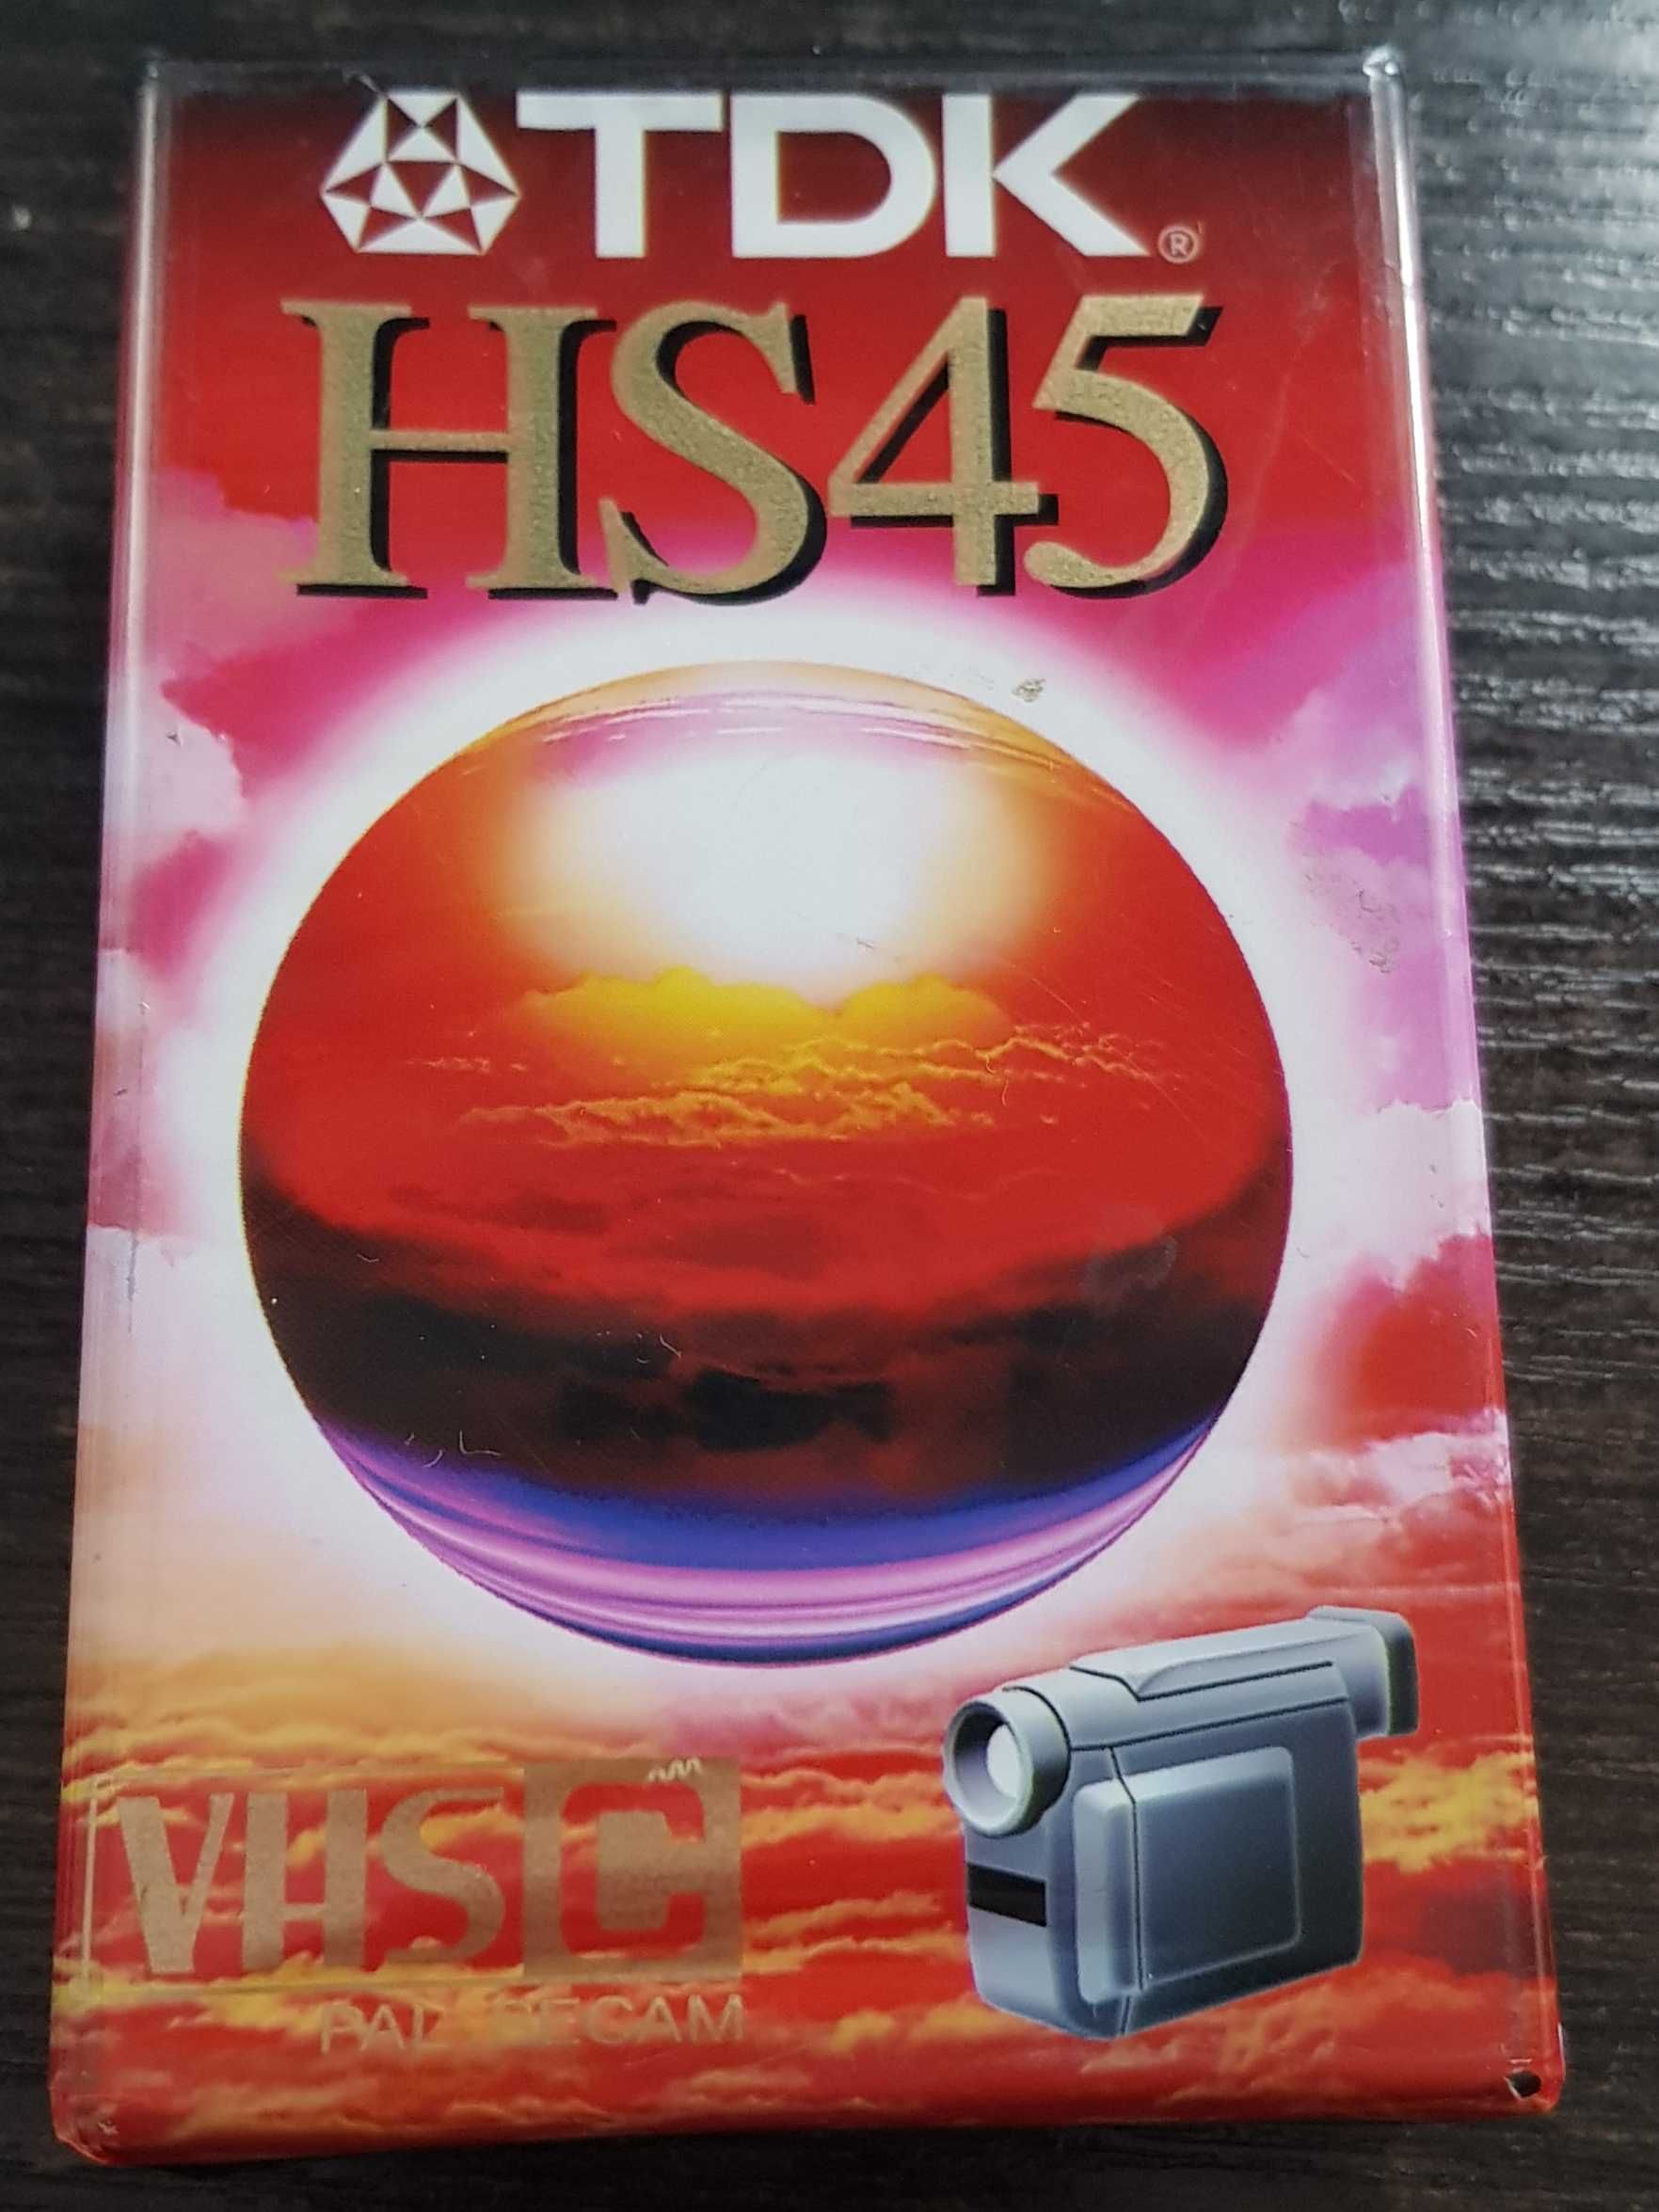 Kaseta VHS typ HS45 TDK